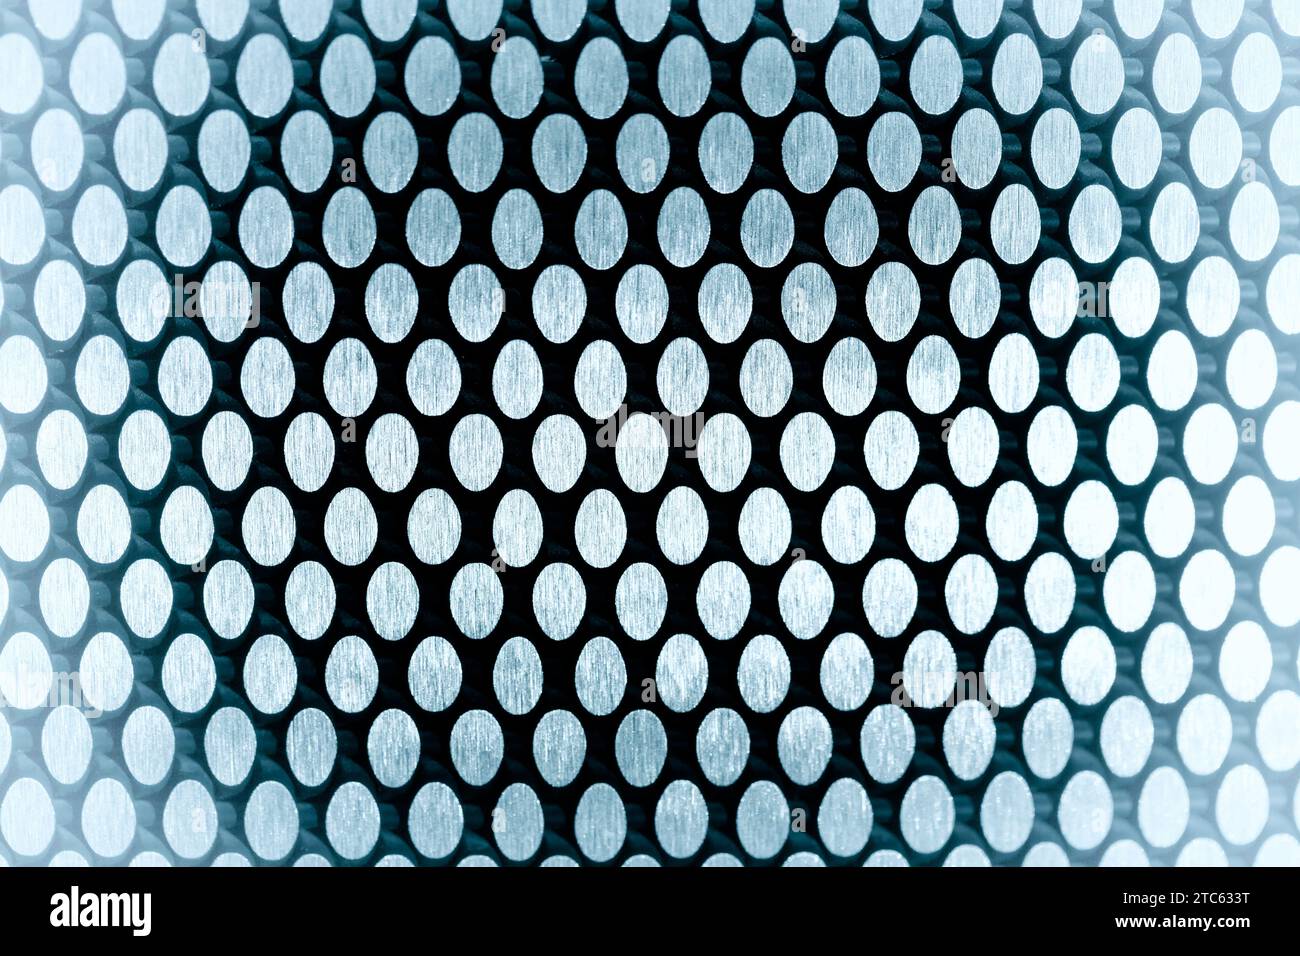 sfondo e texture della griglia metallica astratti con effetto filtro Foto Stock